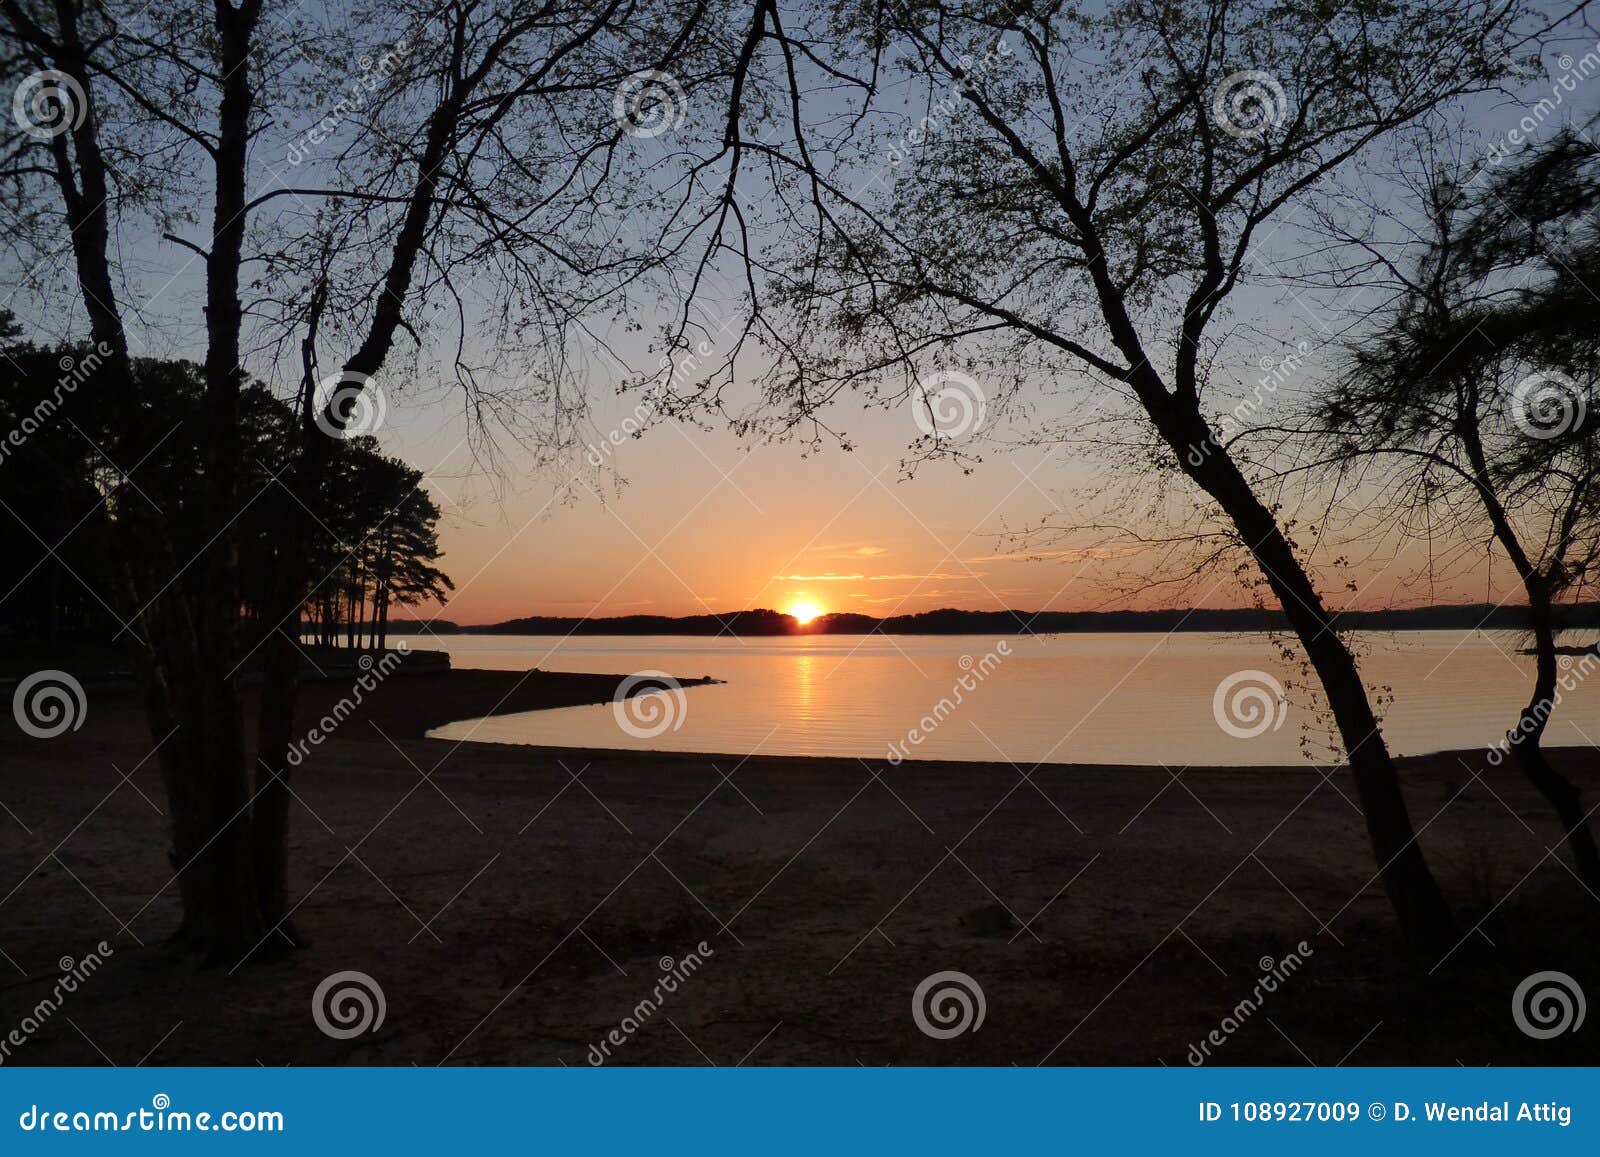 sunset beyond lake lanier georgia